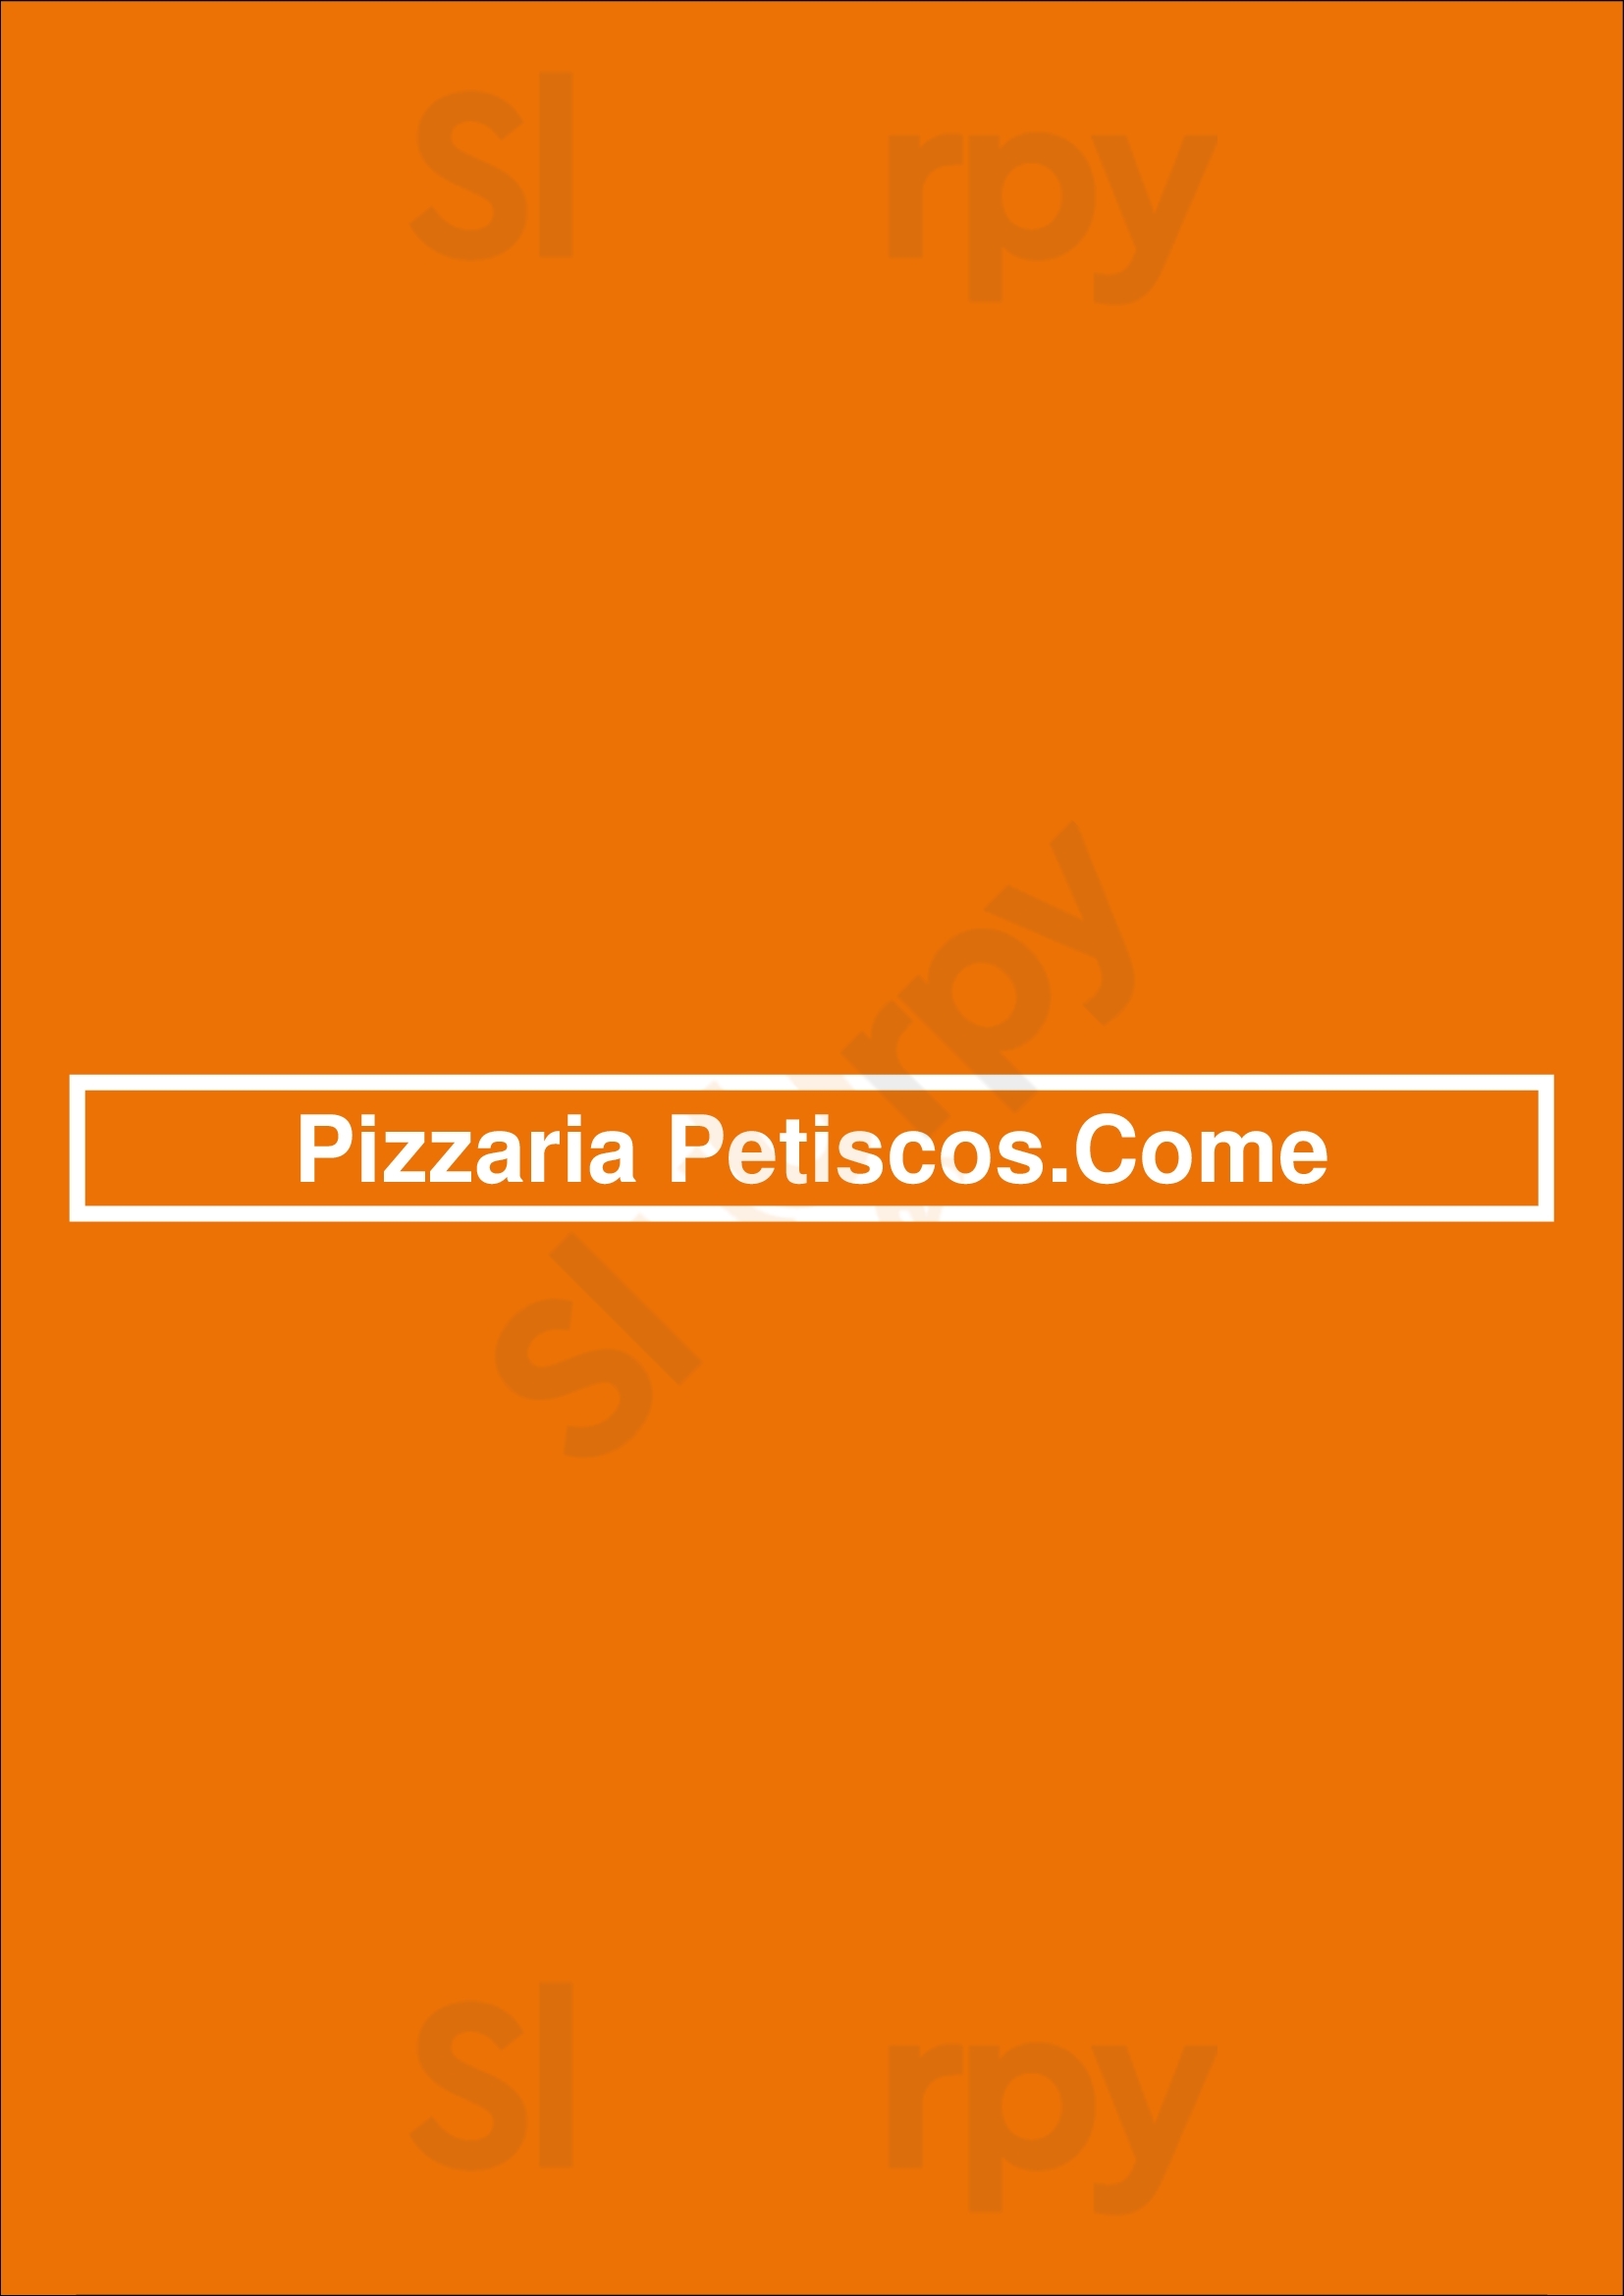 Pizzaria Petiscos.come Porto Menu - 1